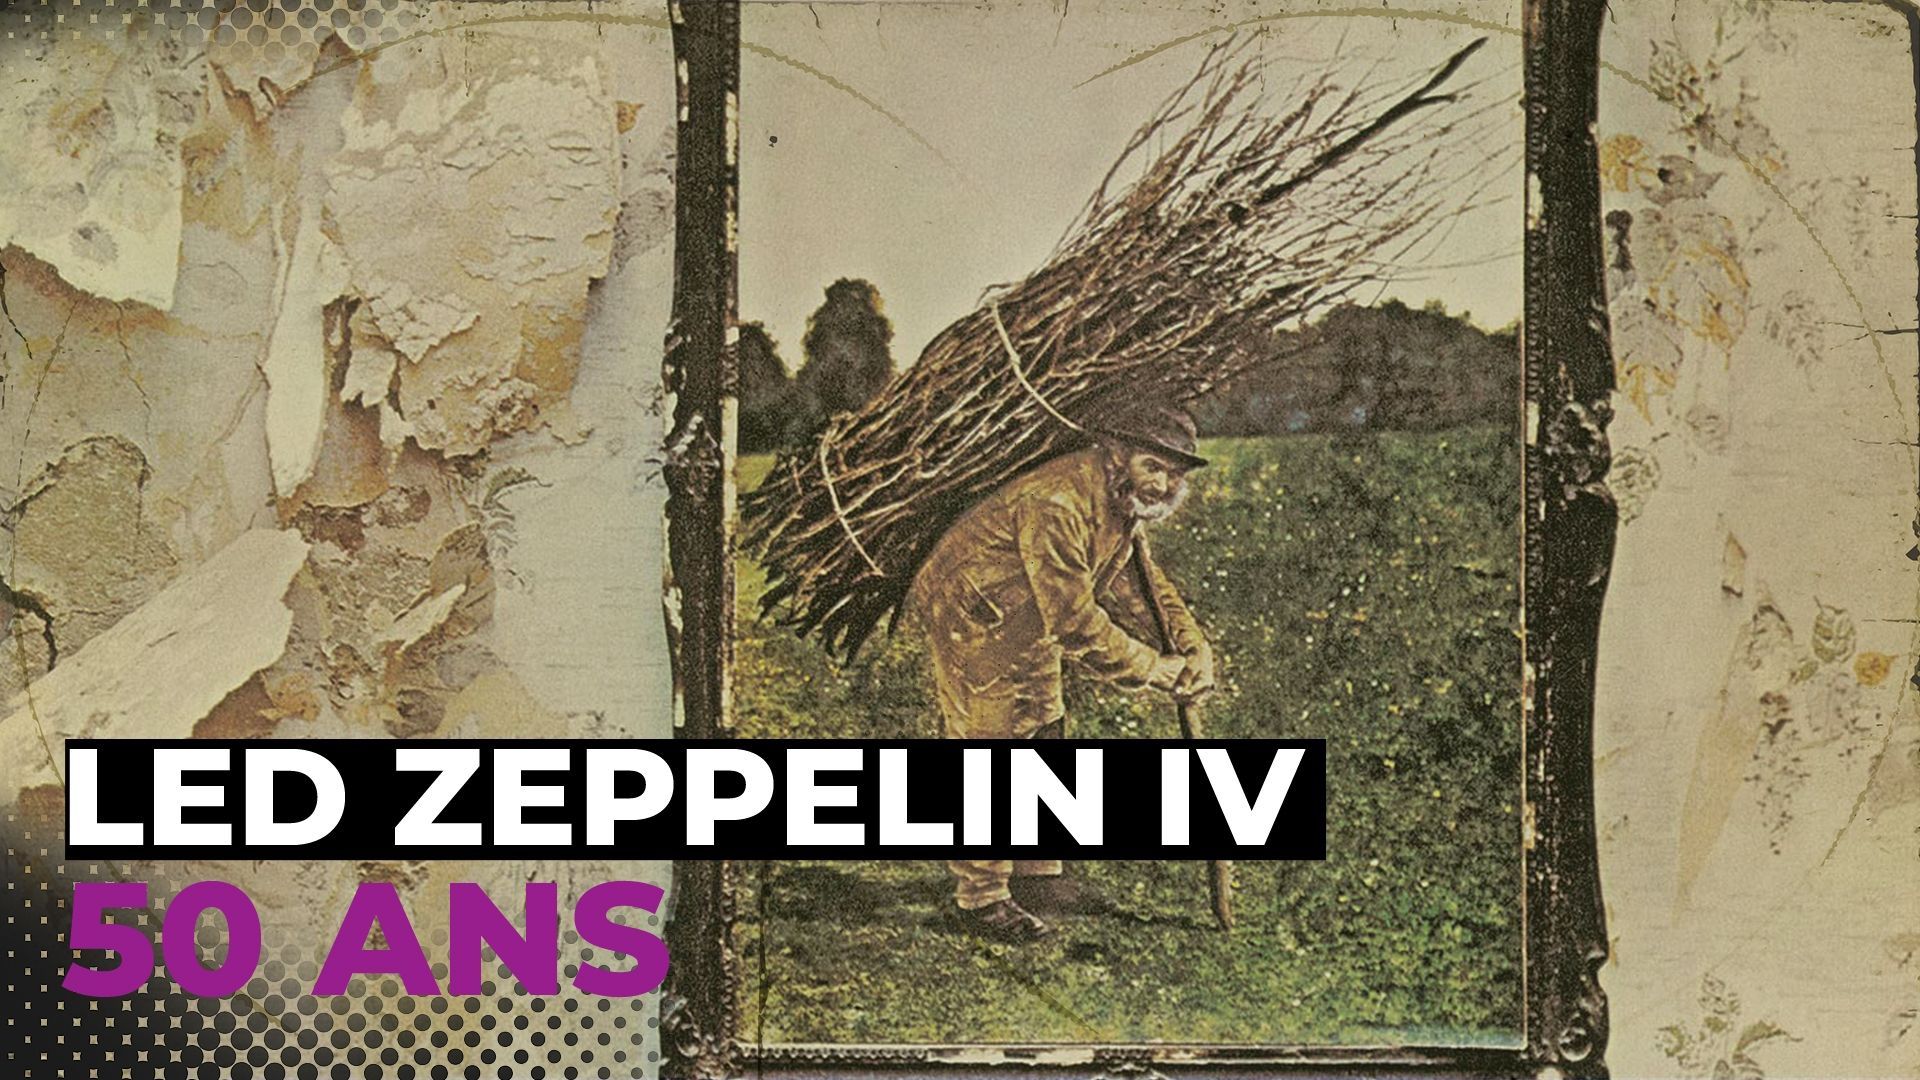 Les 50 ans de Led Zeppelin IV